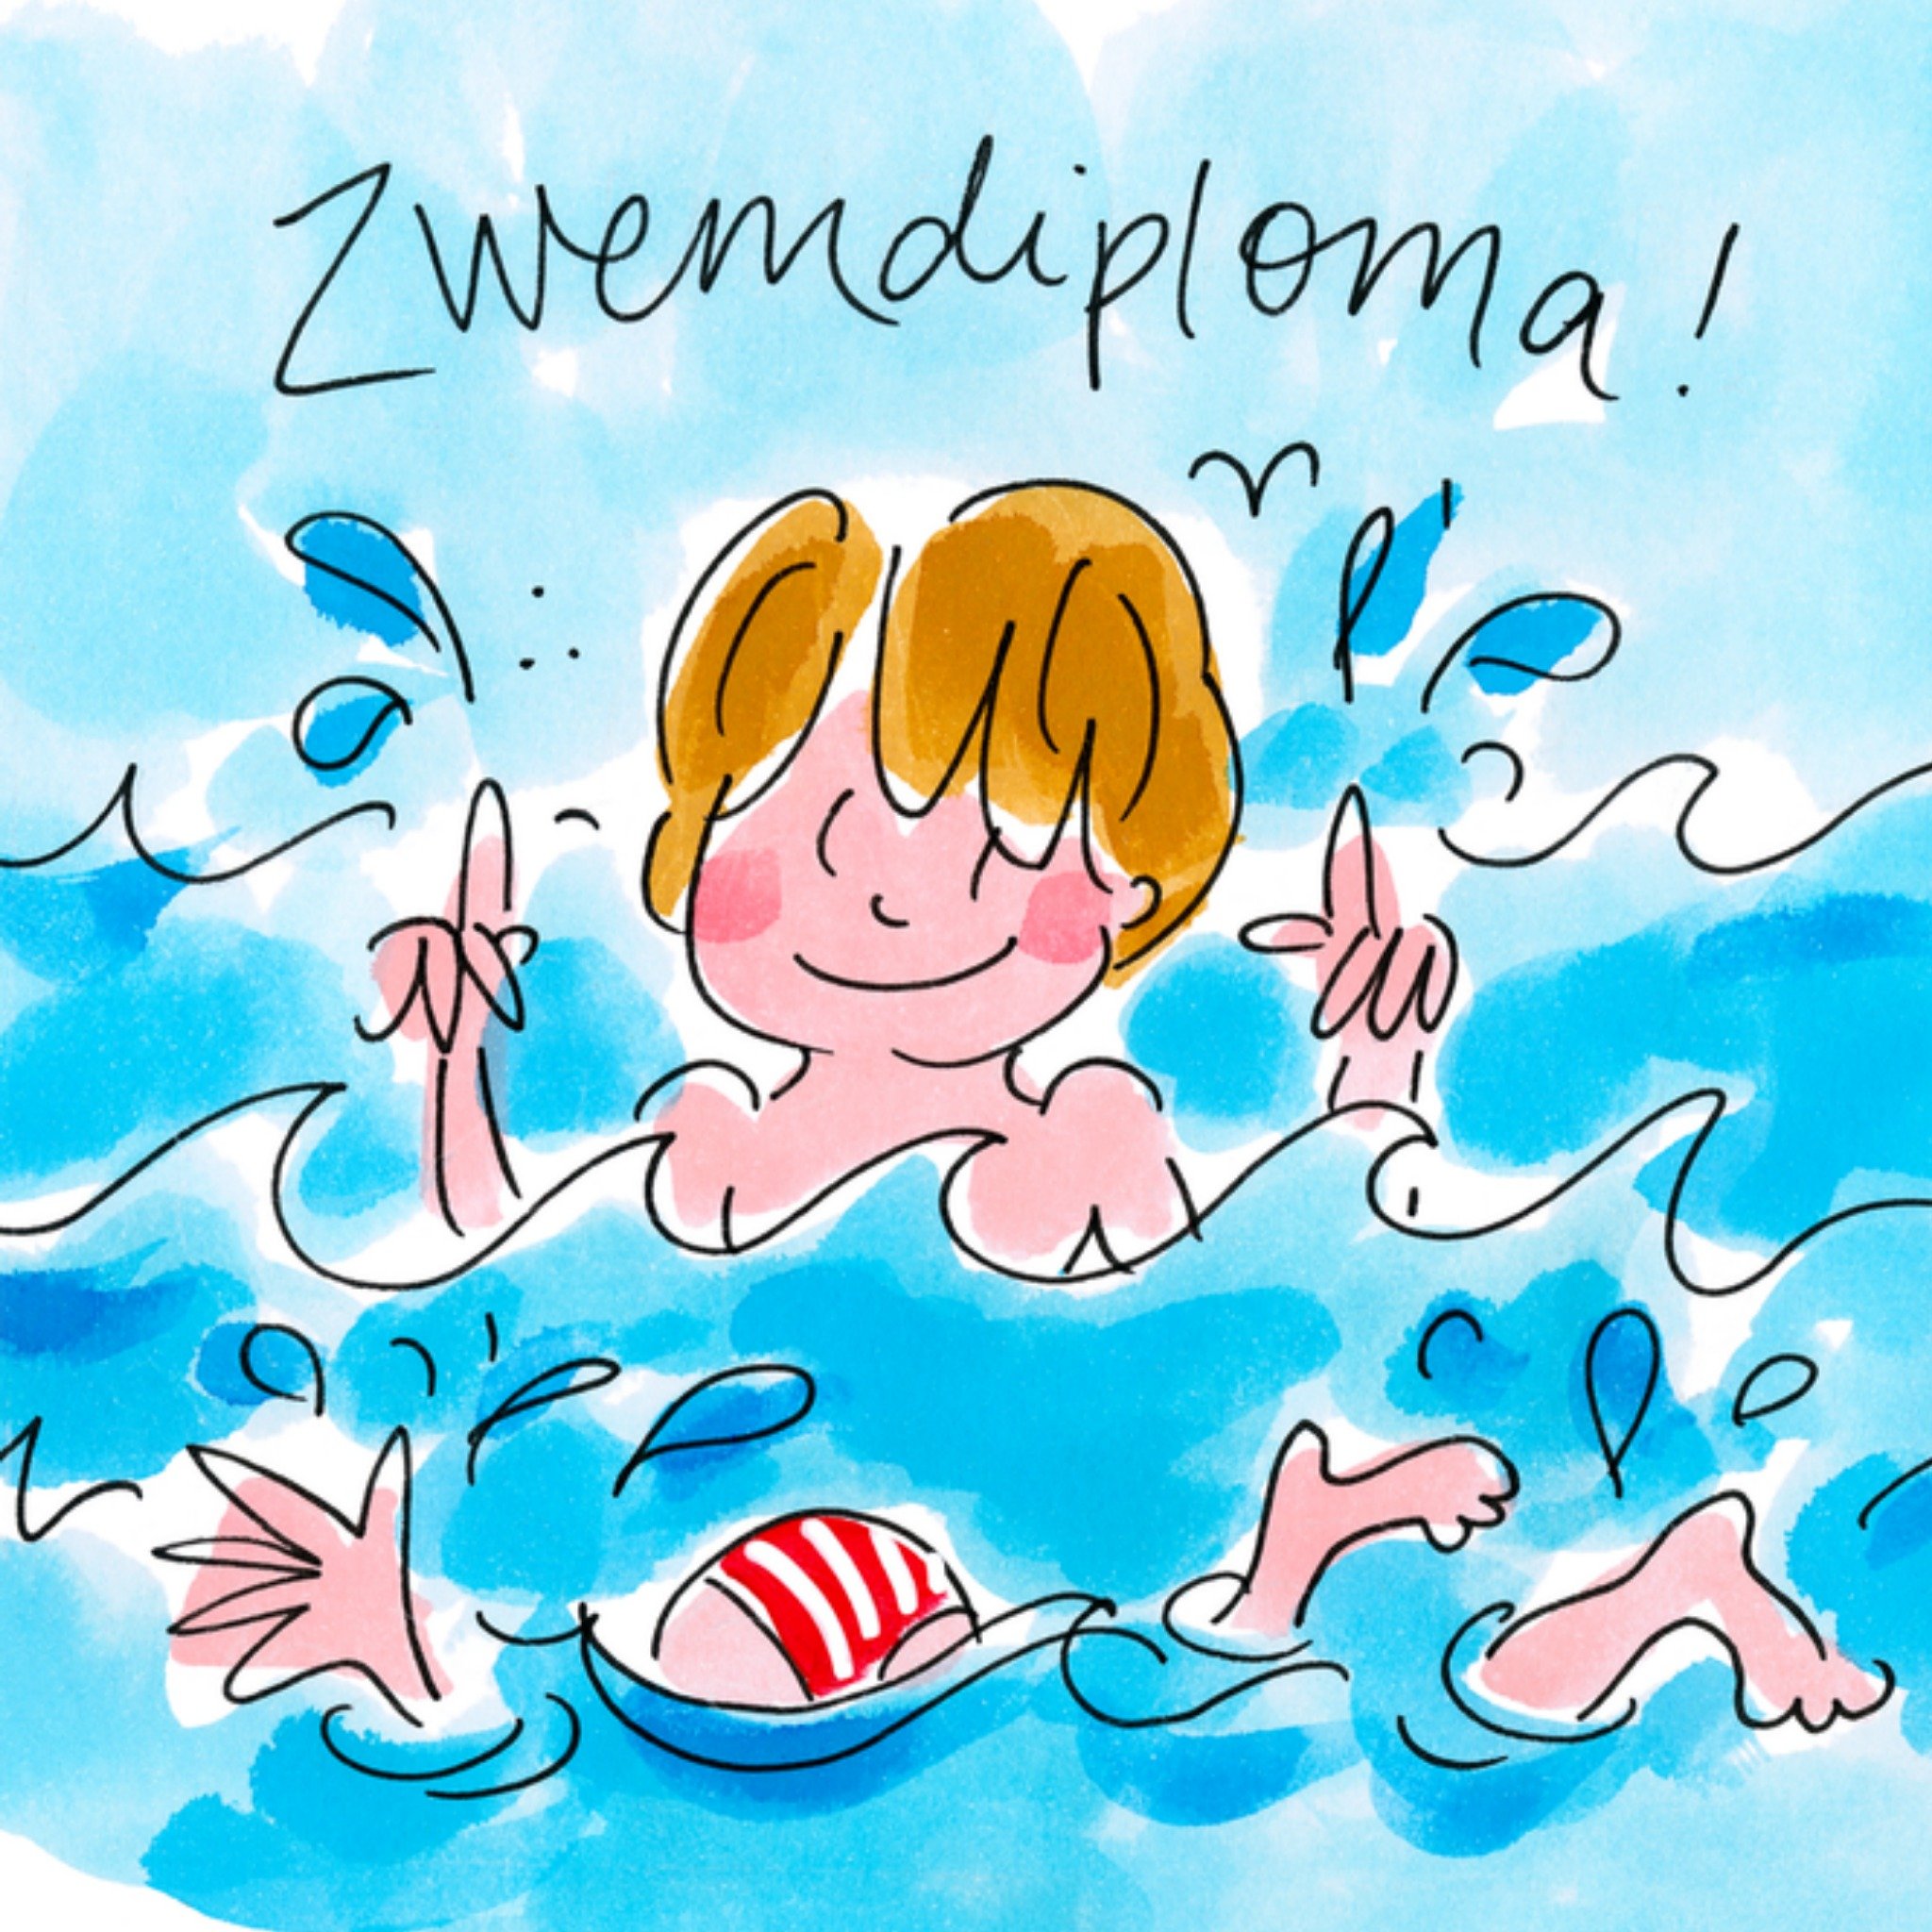 Blond Amsterdam - Zwemdiploma - Kleinzoon 18